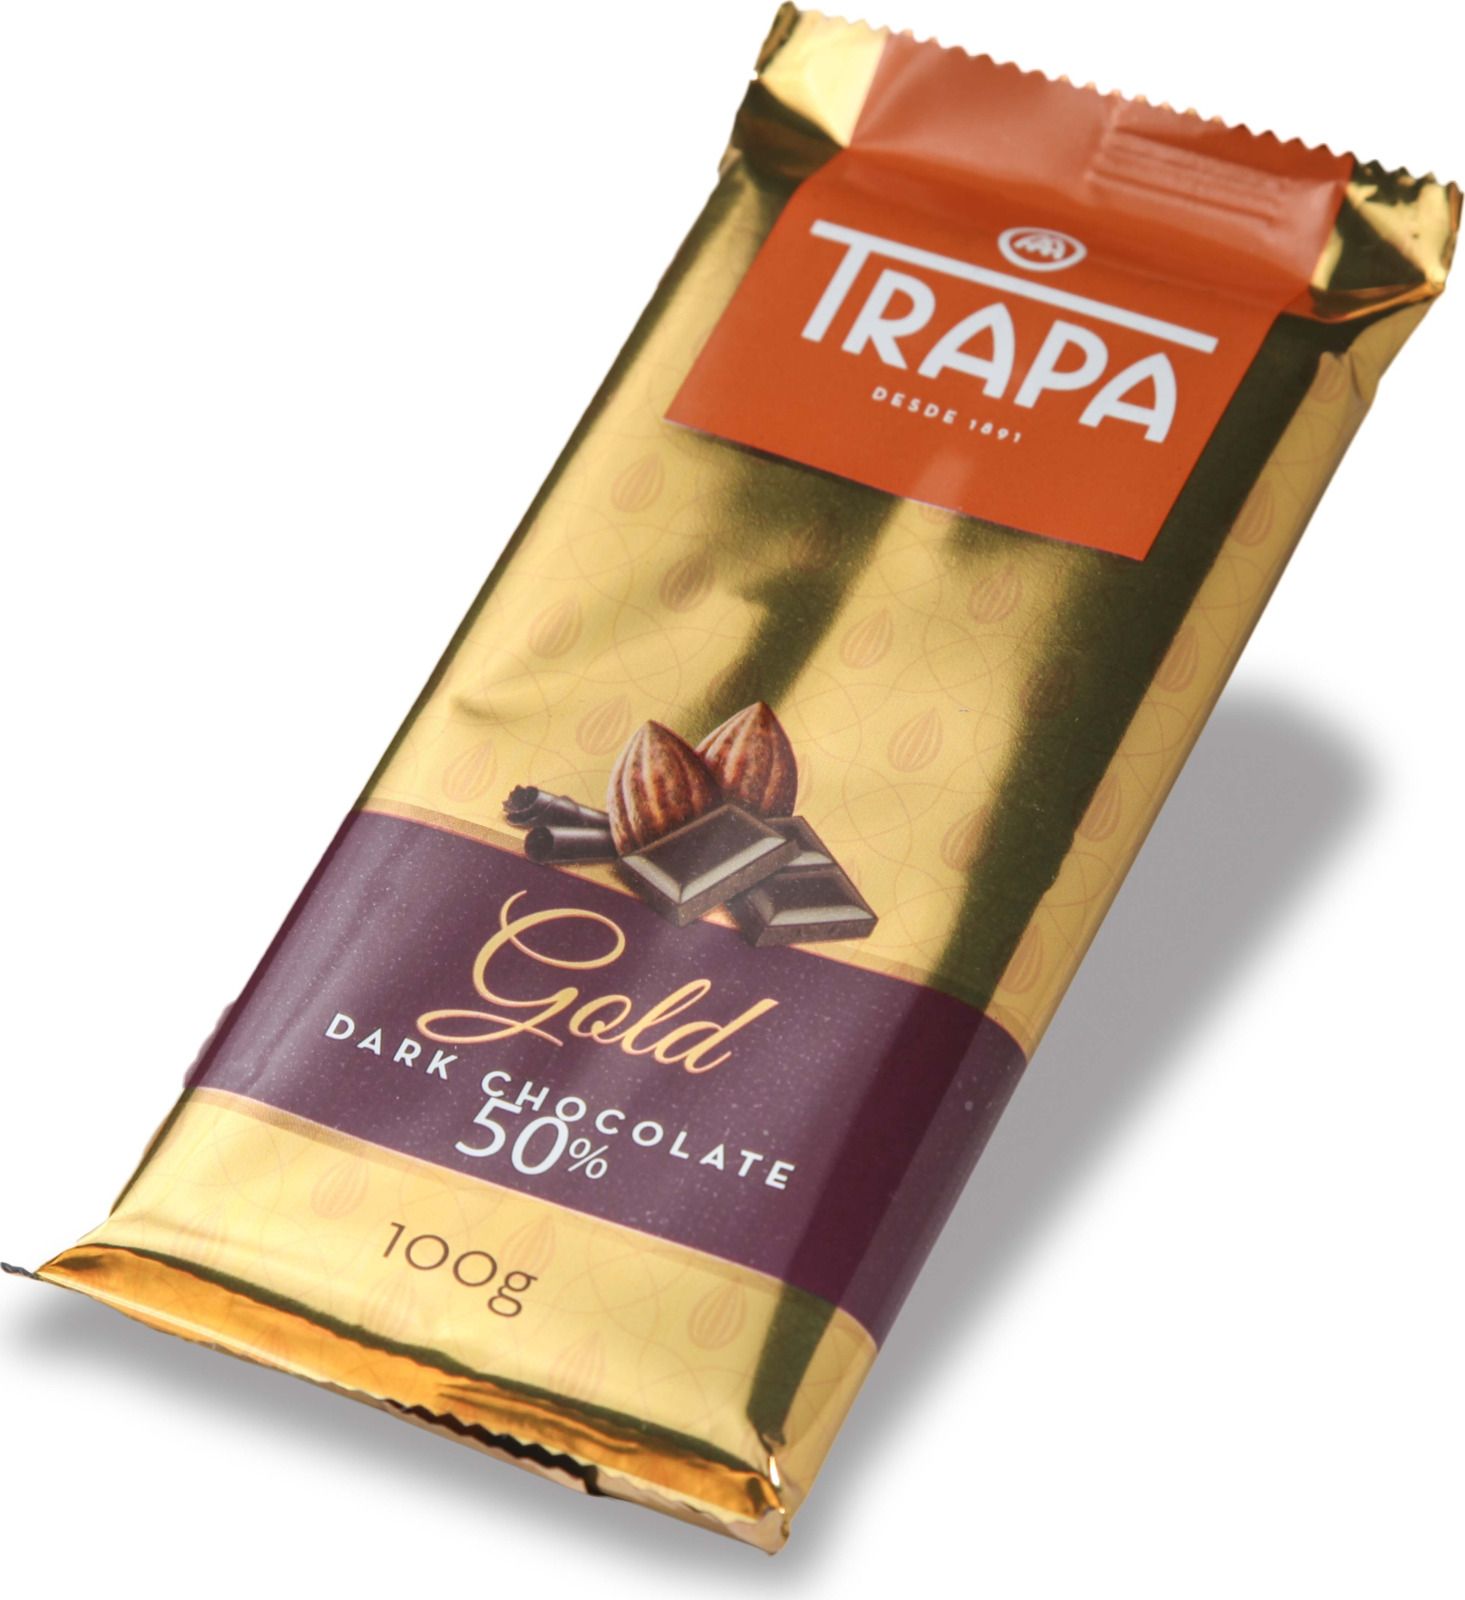   Trapa Gold Bar, 50%, 100 